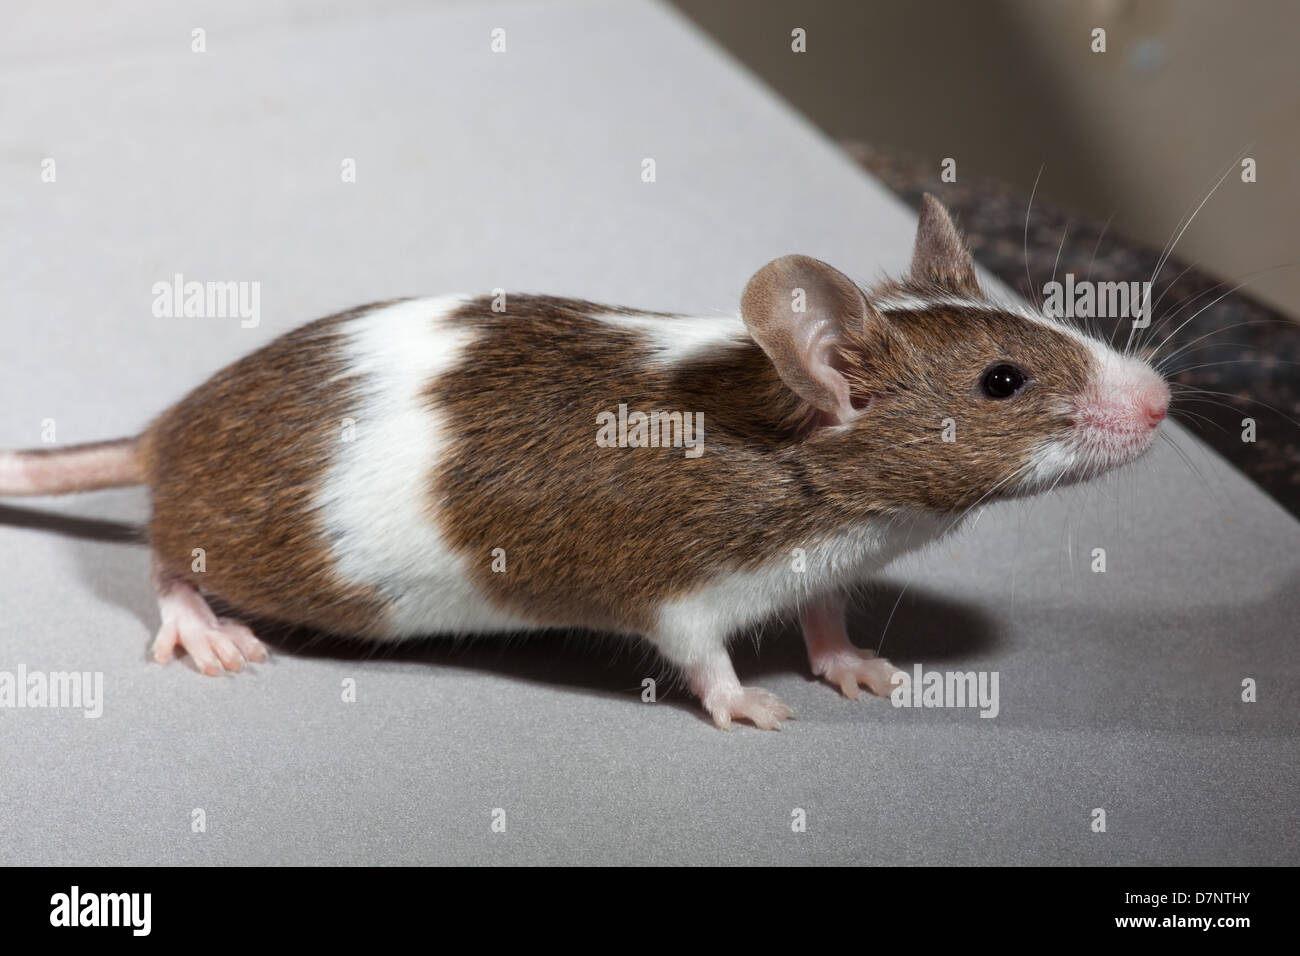 Zahmen Haustier Maus. (Mus Musculus). Skewbal, oder braun und weiß, Farbe Form. Stockfoto